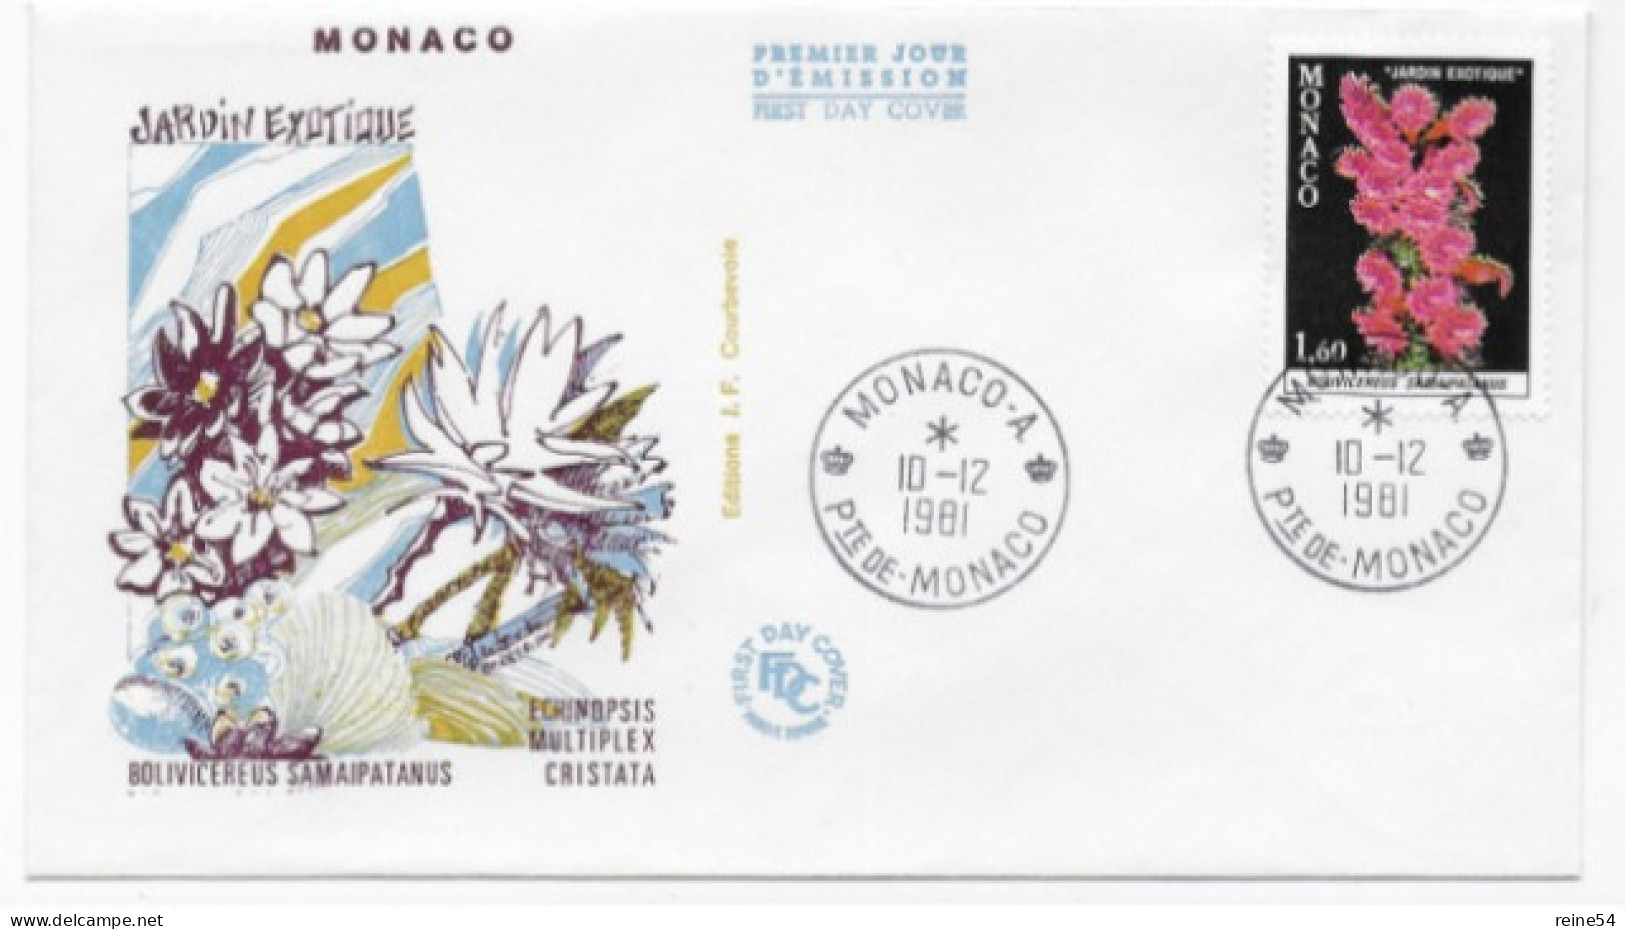 Enveloppe Premier Jour - Jardin Exotique -Bolivicereus Samaipatanus 10-12-1981 Pte De Monaco (fleurs) - Oblitérés